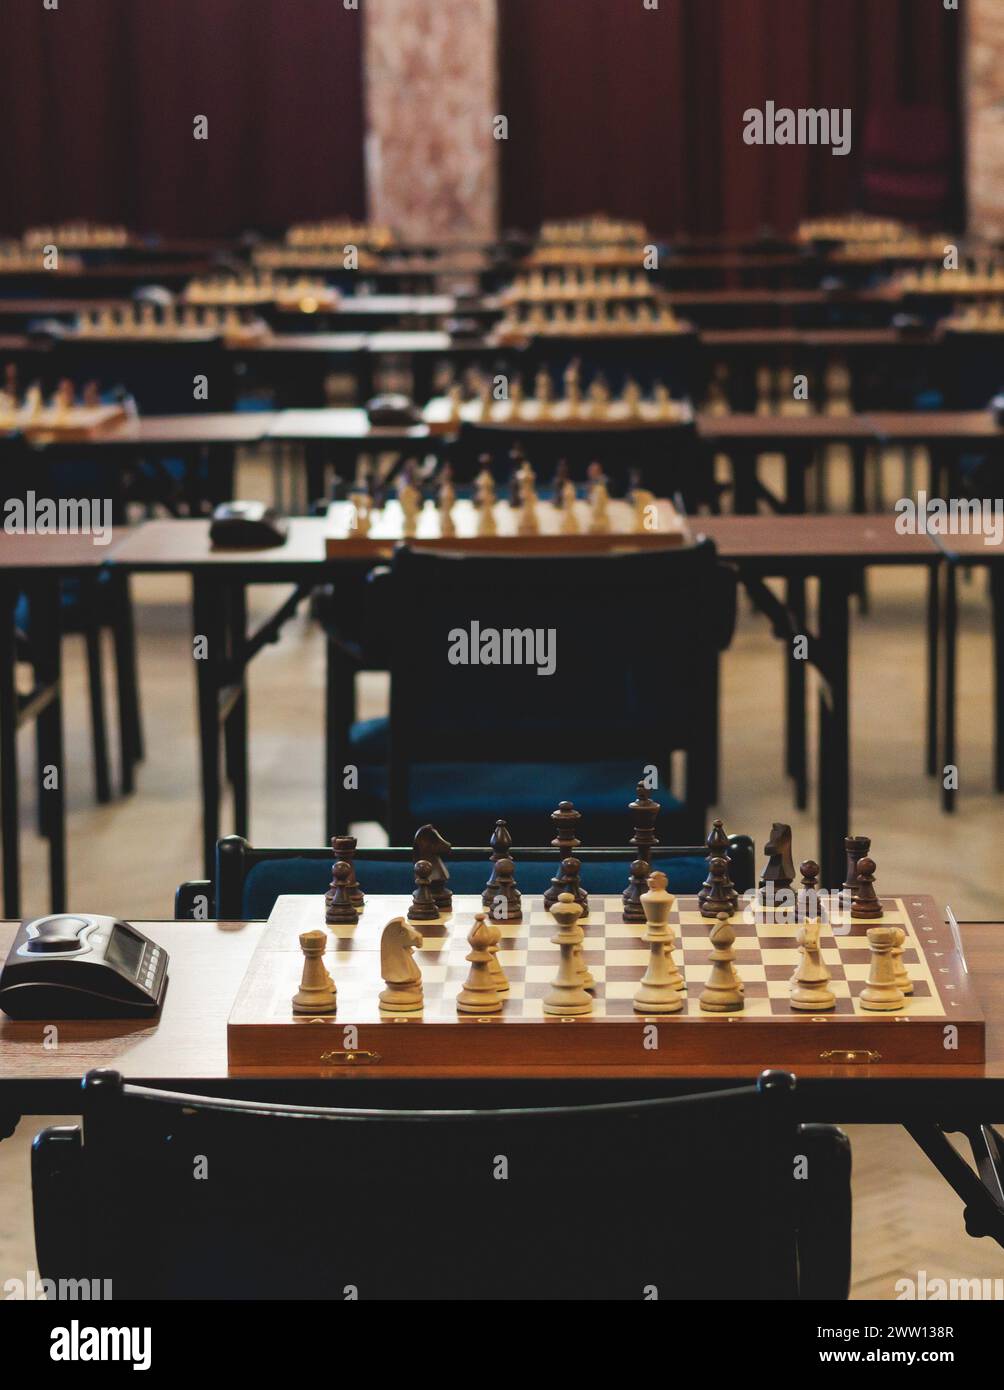 Torneo di scacchi, bambini e adulti partecipano a partite di scacchi all'aperto nella sala interna, giocatori di tutte le età giocano, competizioni nel club della scuola di scacchi Foto Stock